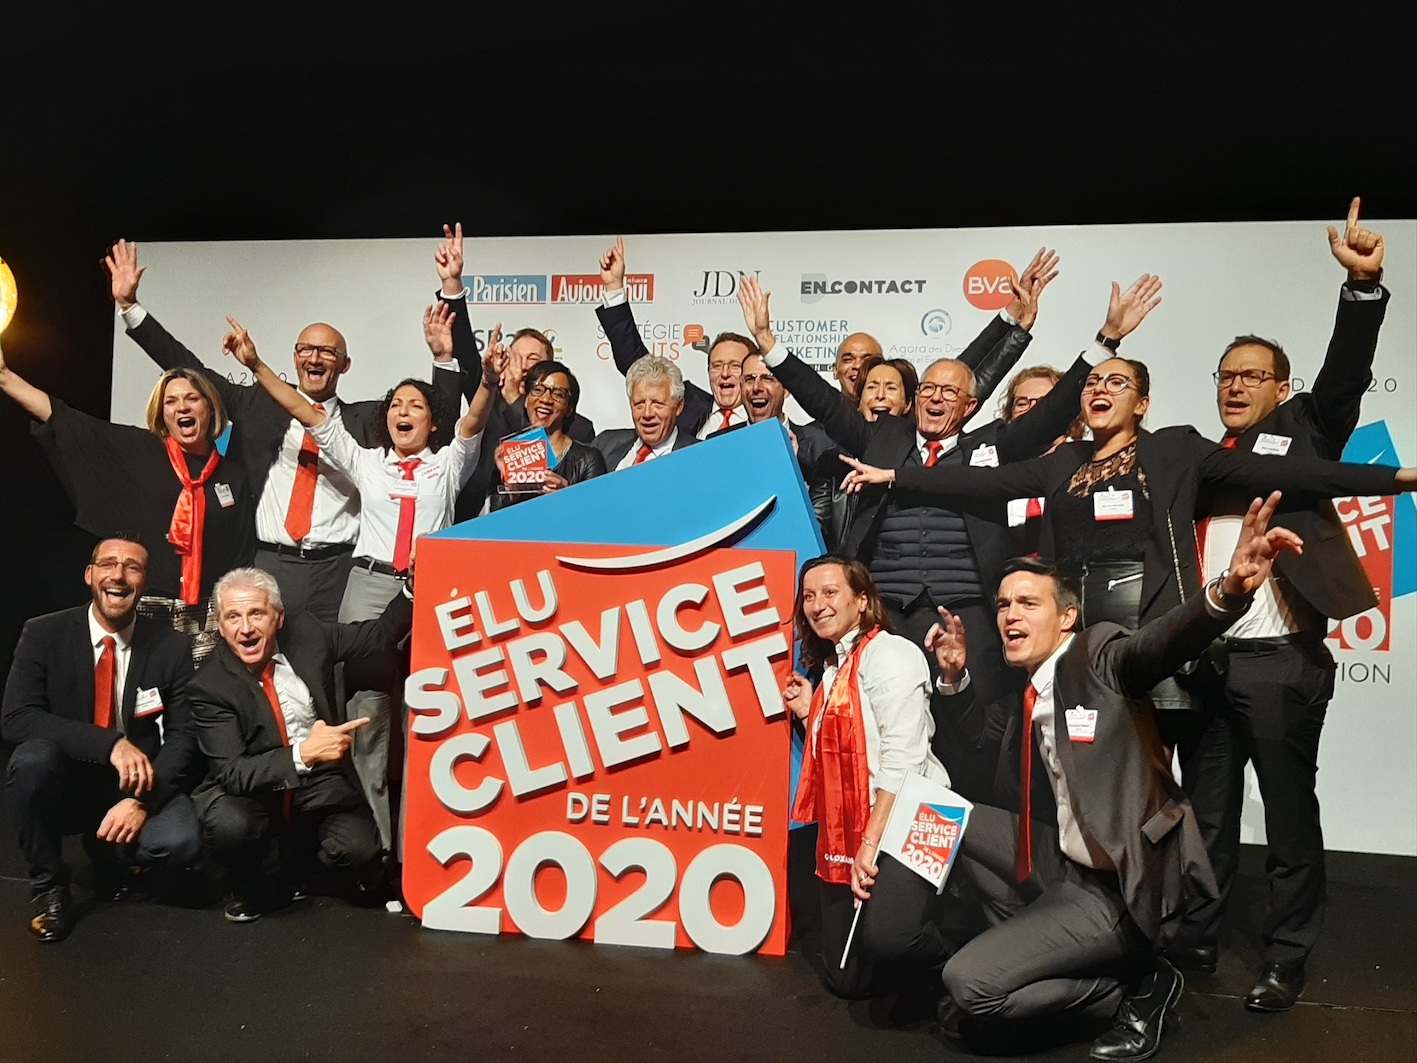 Loxam élu service client 2020 !